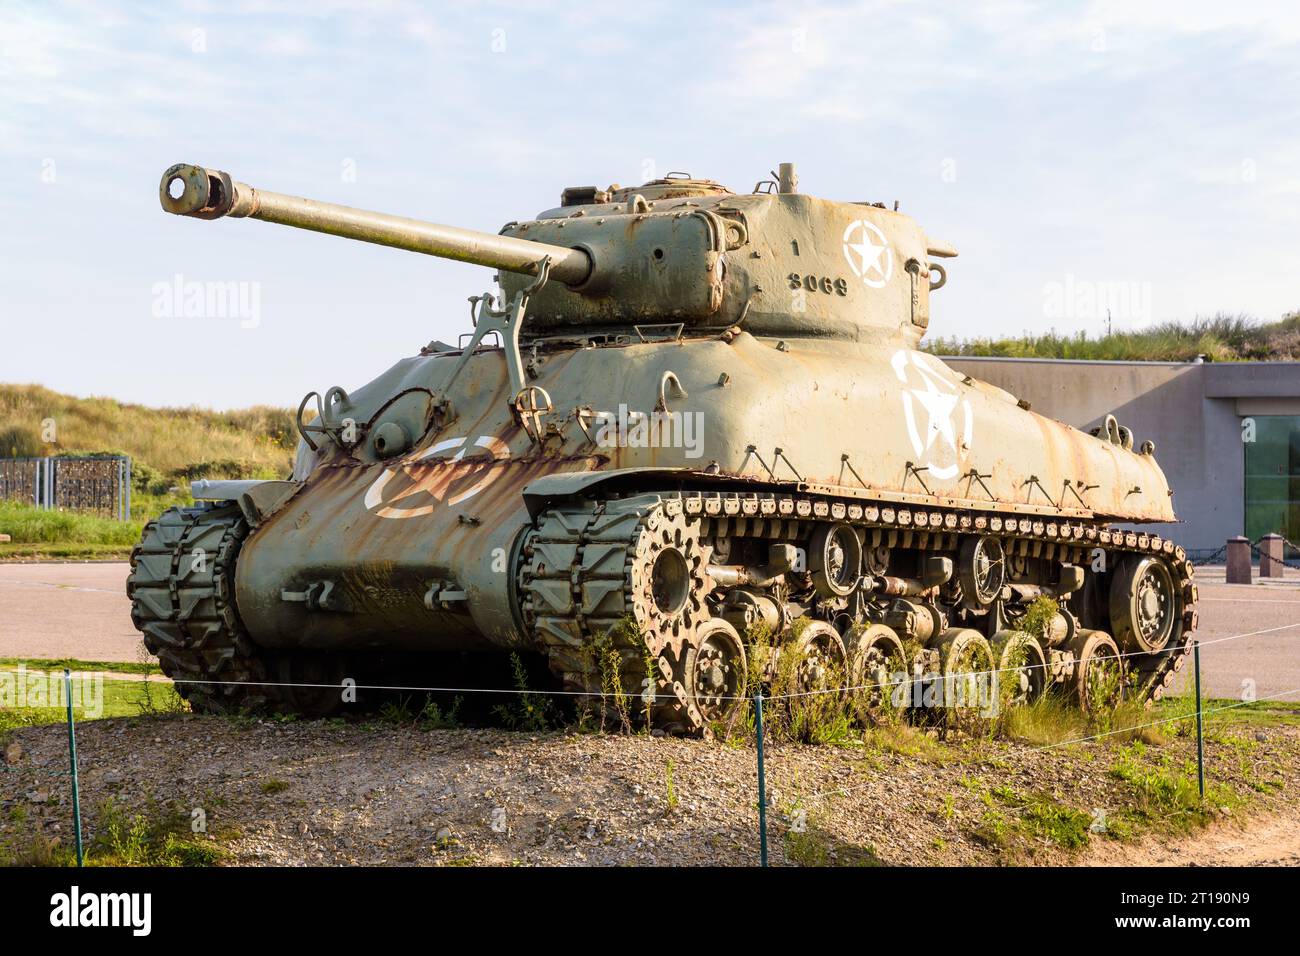 Der M4 Sherman Panzer der US Army wurde vor dem Utah Beach Landing Museum in der Normandie ausgestellt und widmete sich den Landungen des D Day und der Normandie. Stockfoto